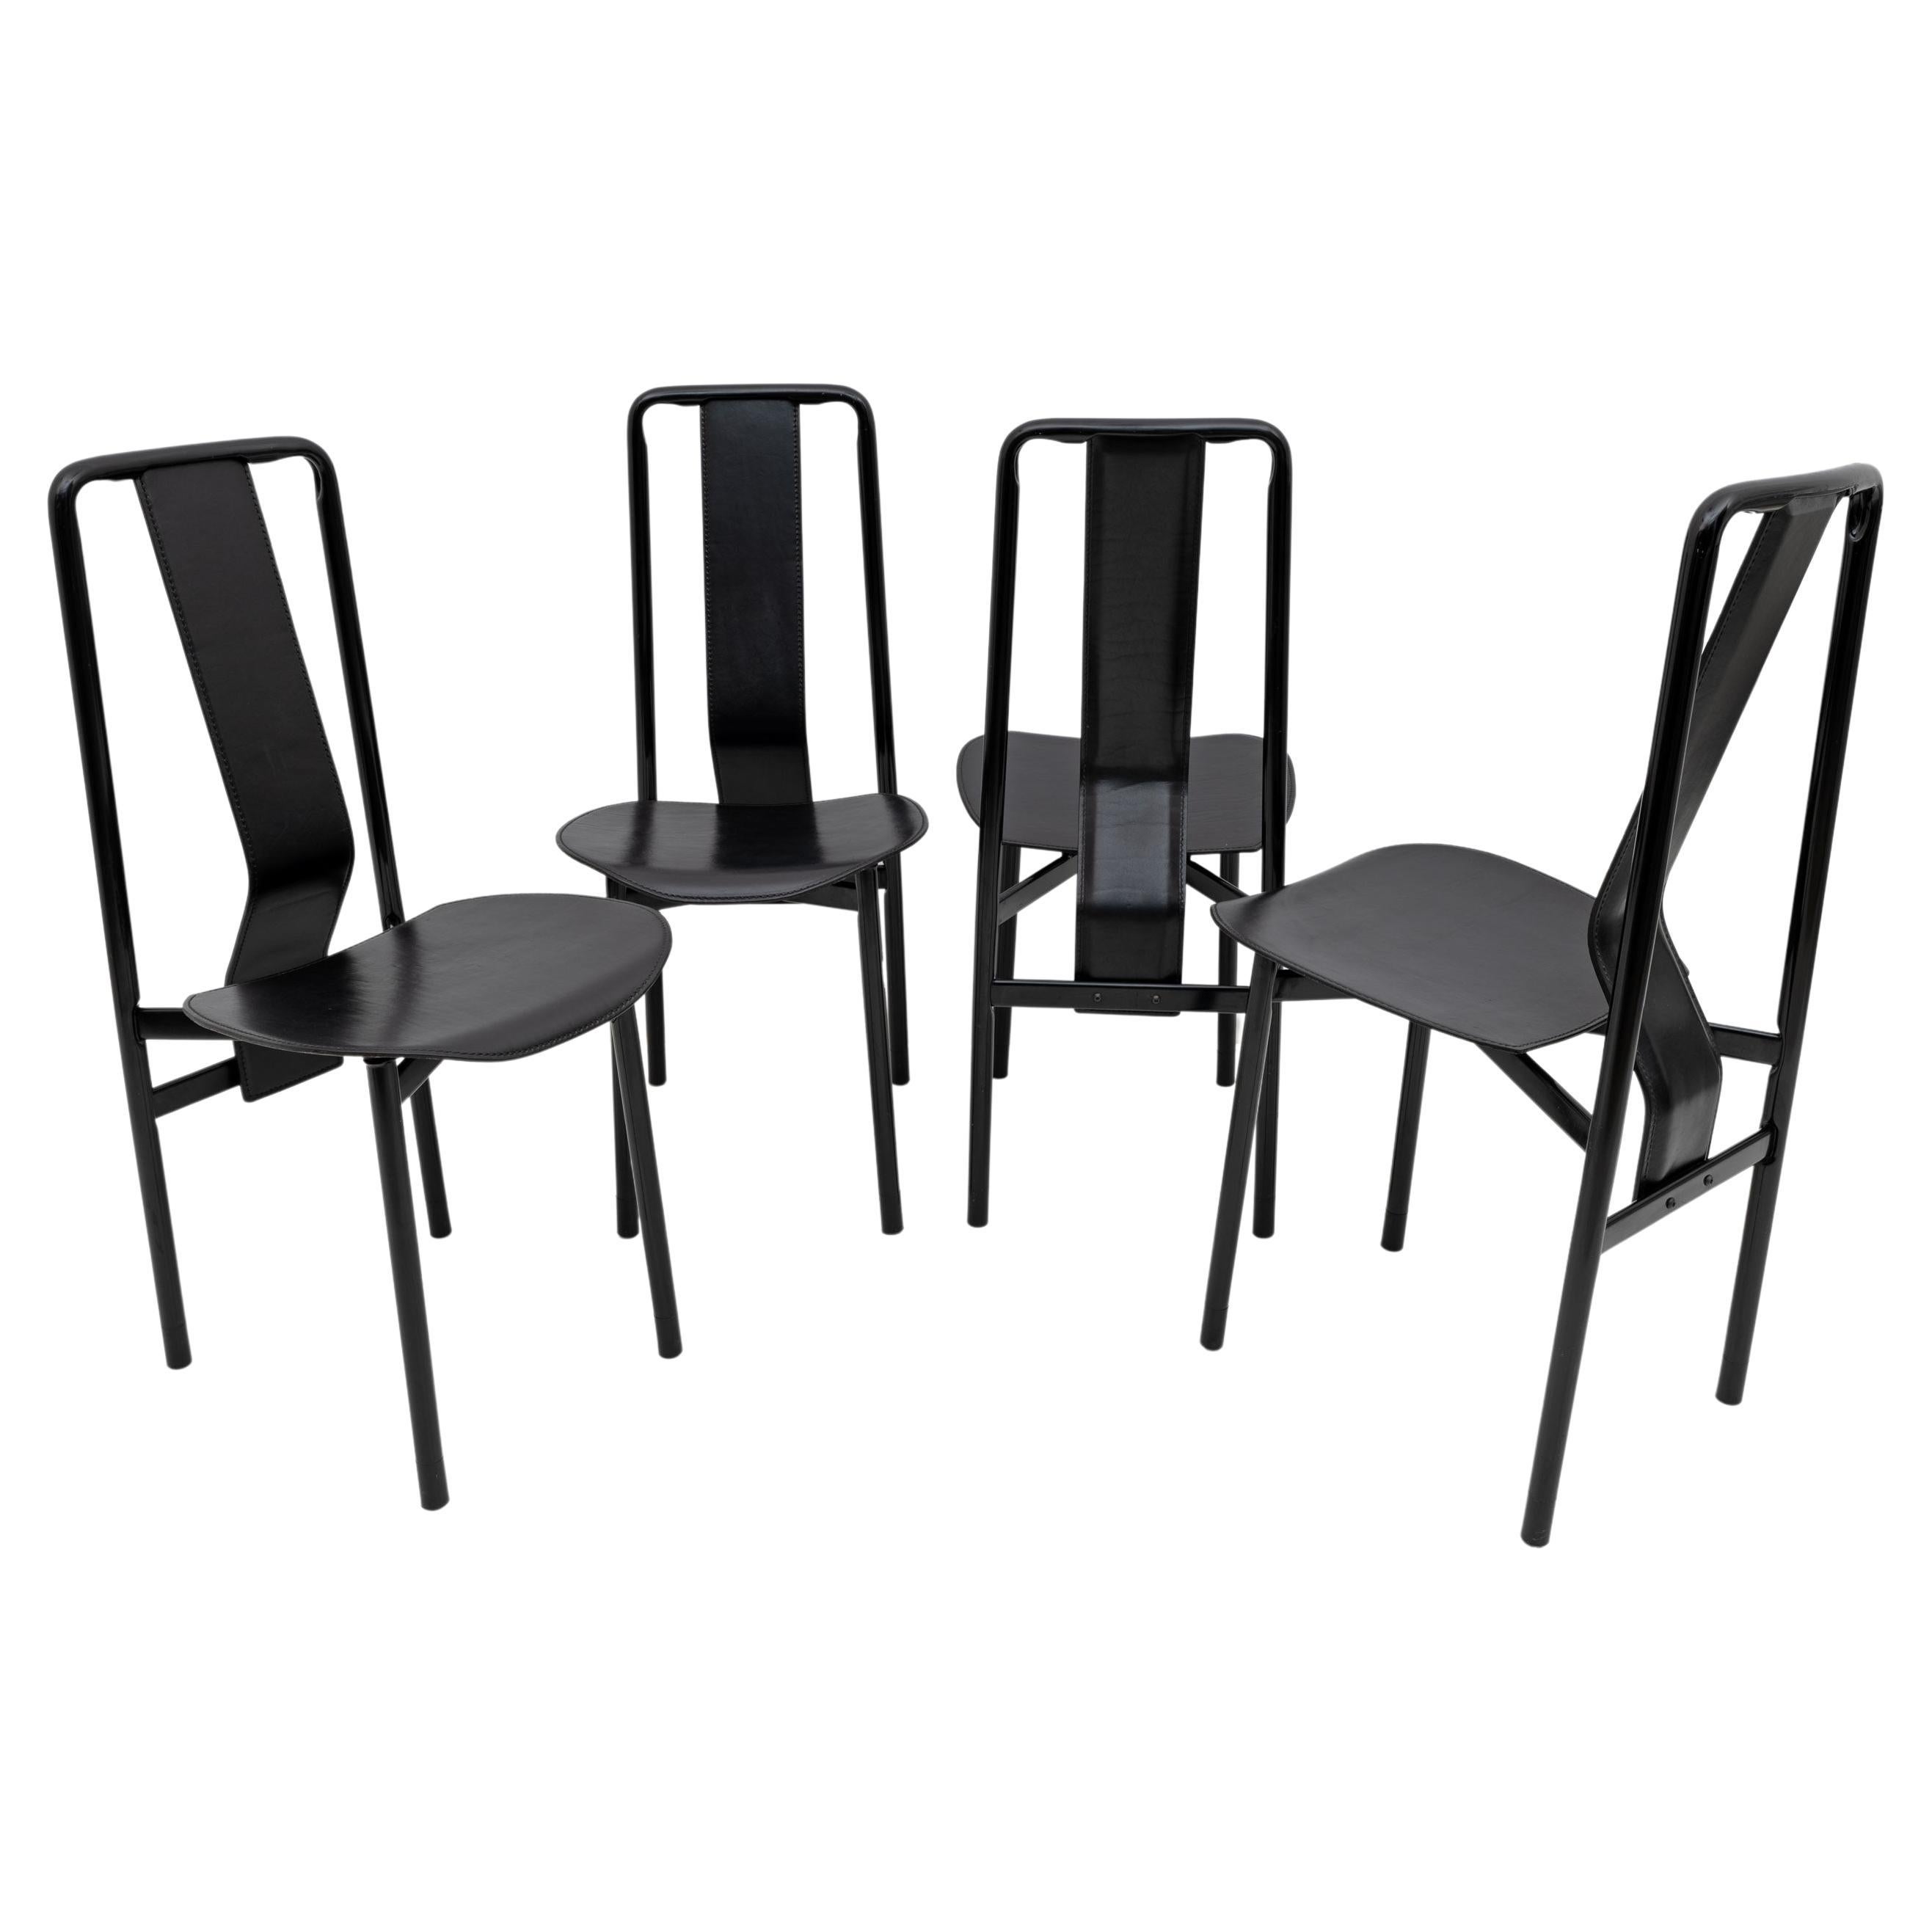 Irma Design Chairs by Achille Castiglioni for Zanotta, 1970s, Set of four For Sale